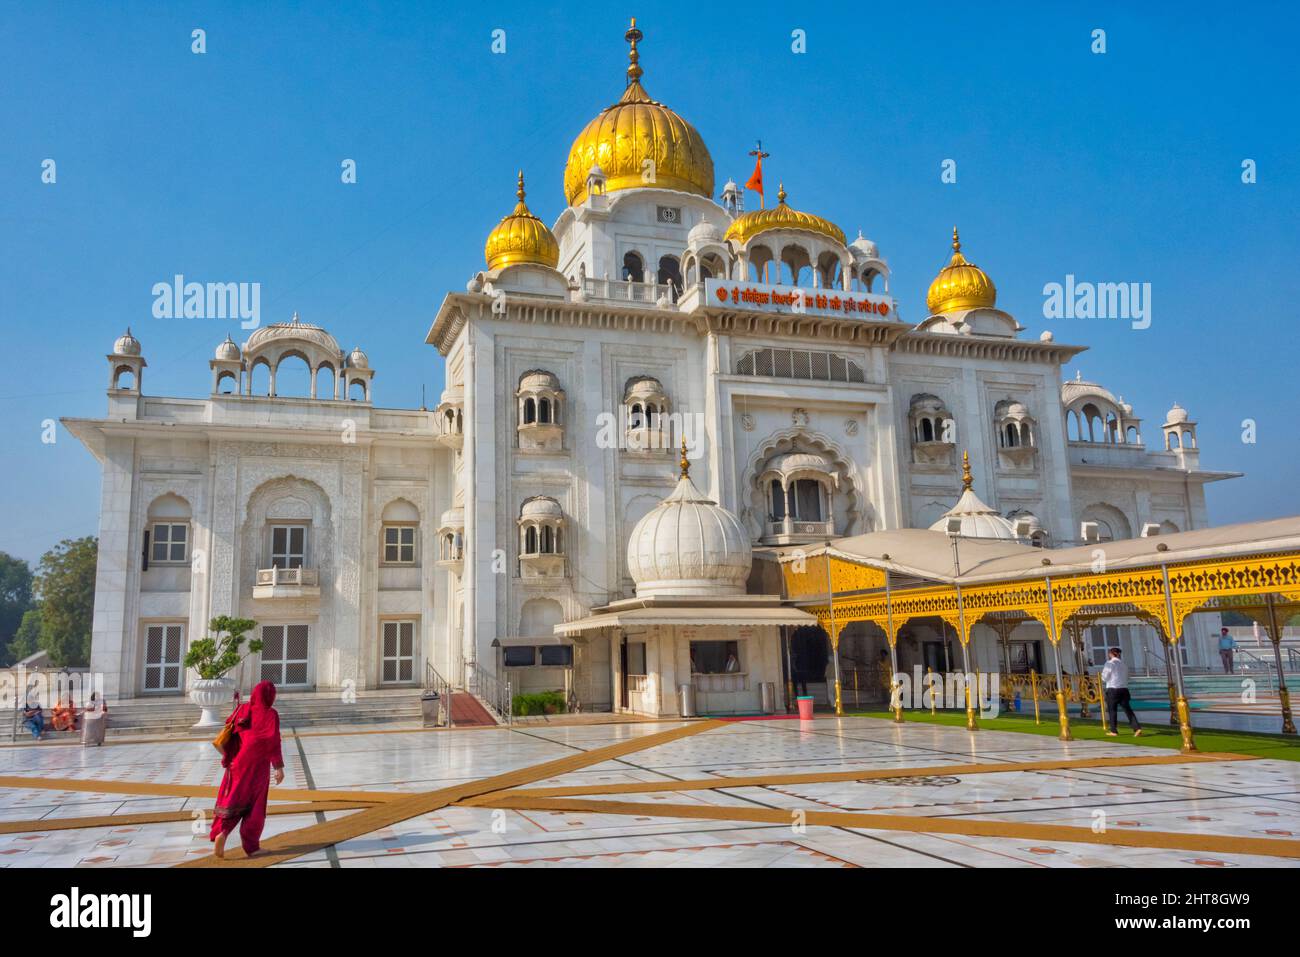 Gurudwara Bangla Sahib, Sikh house of worship, New Delhi, India (Gurudwara Bangla Sahib, the largest Sikh temple in Delhi, serves roughly 10,000 veget Stock Photo